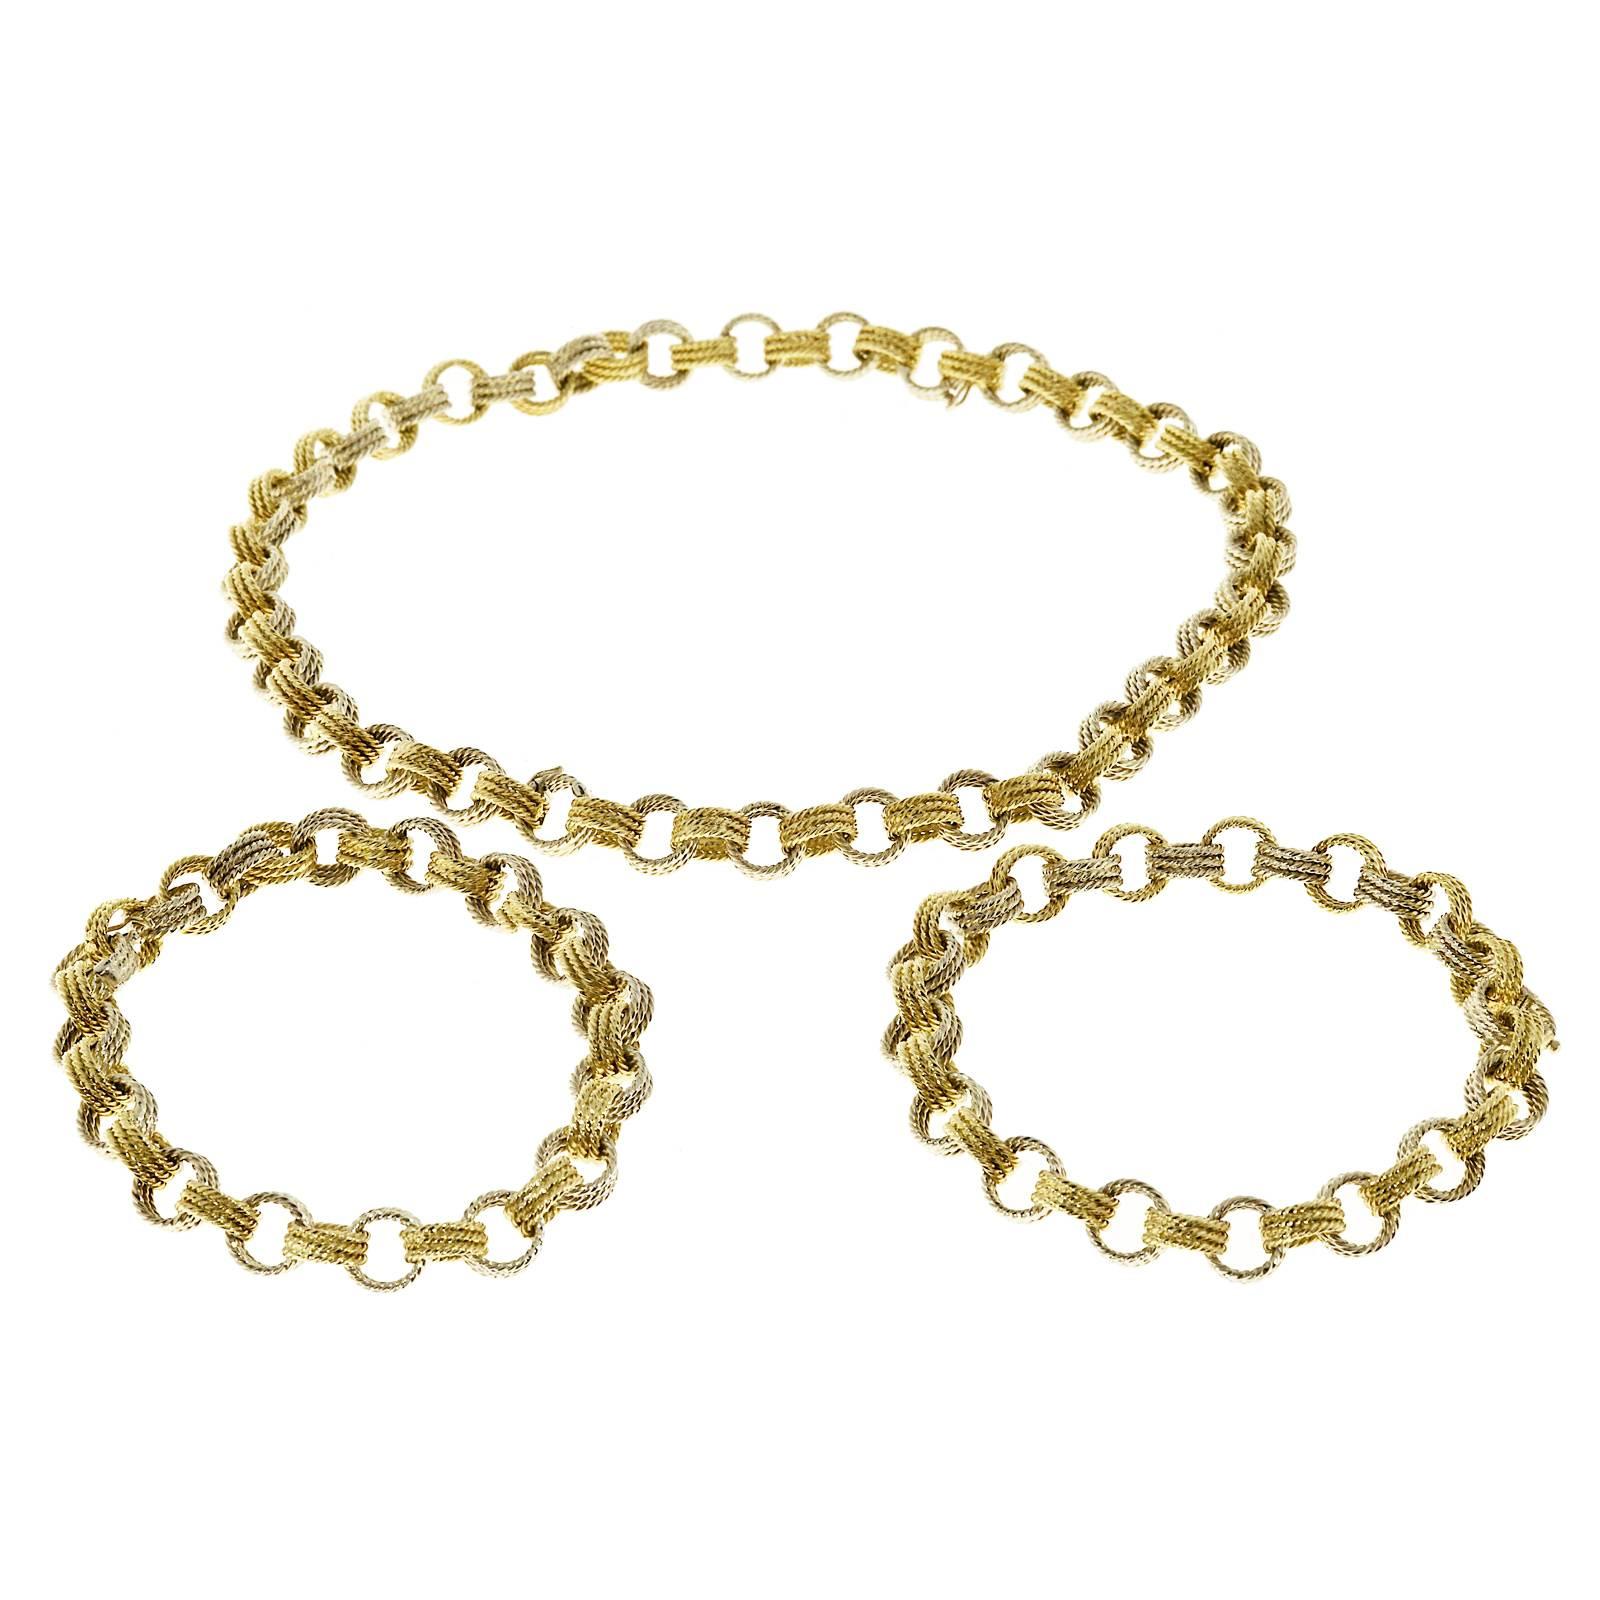 Handmade 2 Color Gold Wire Link Necklace Bracelet